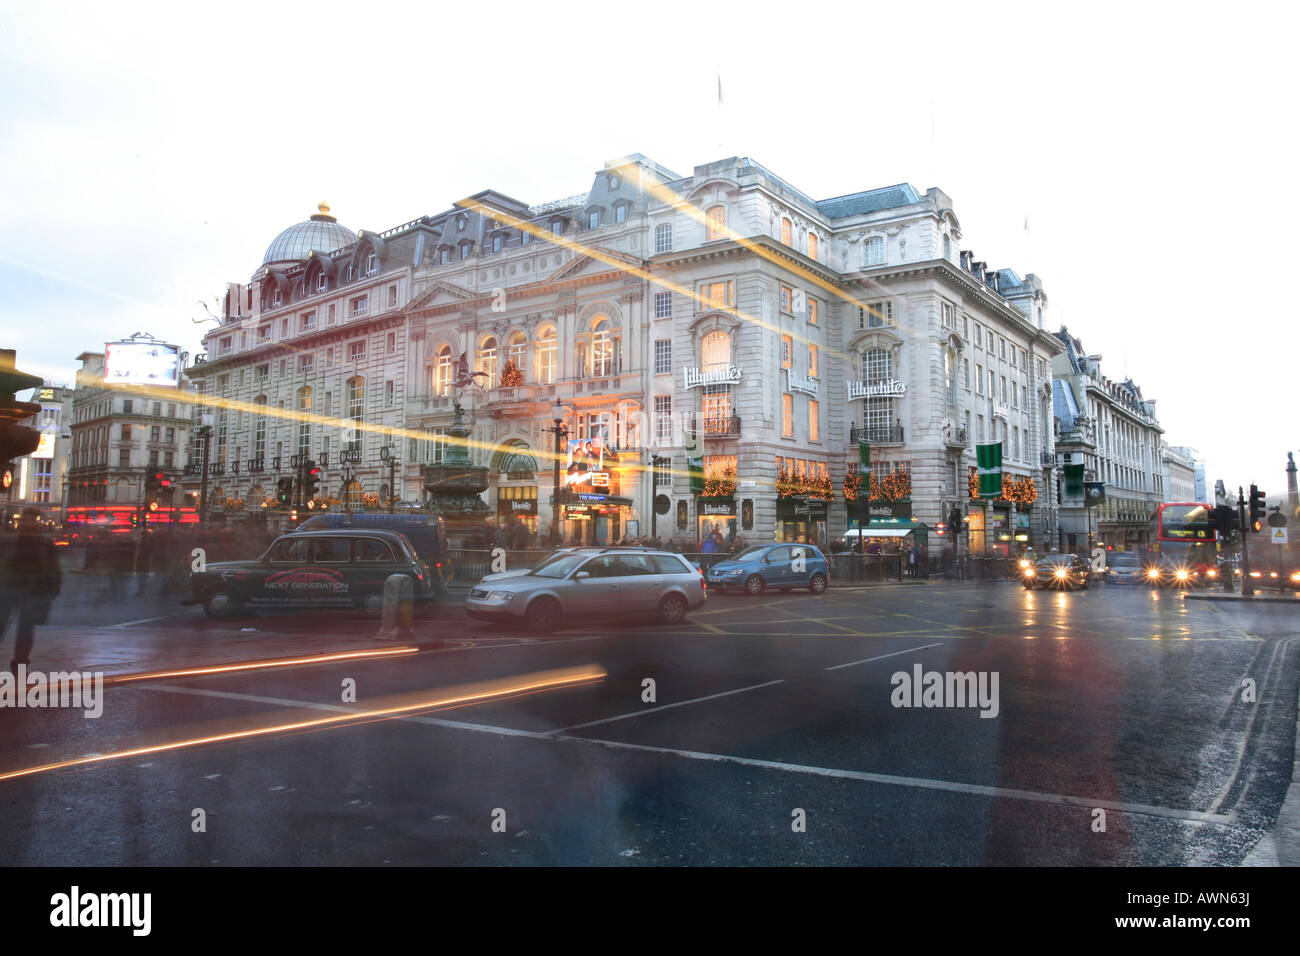 Le temps d'achats de Noël : les gens pressés par la pluie torrentielle, Piccadilly Circus, Londres, UK Banque D'Images